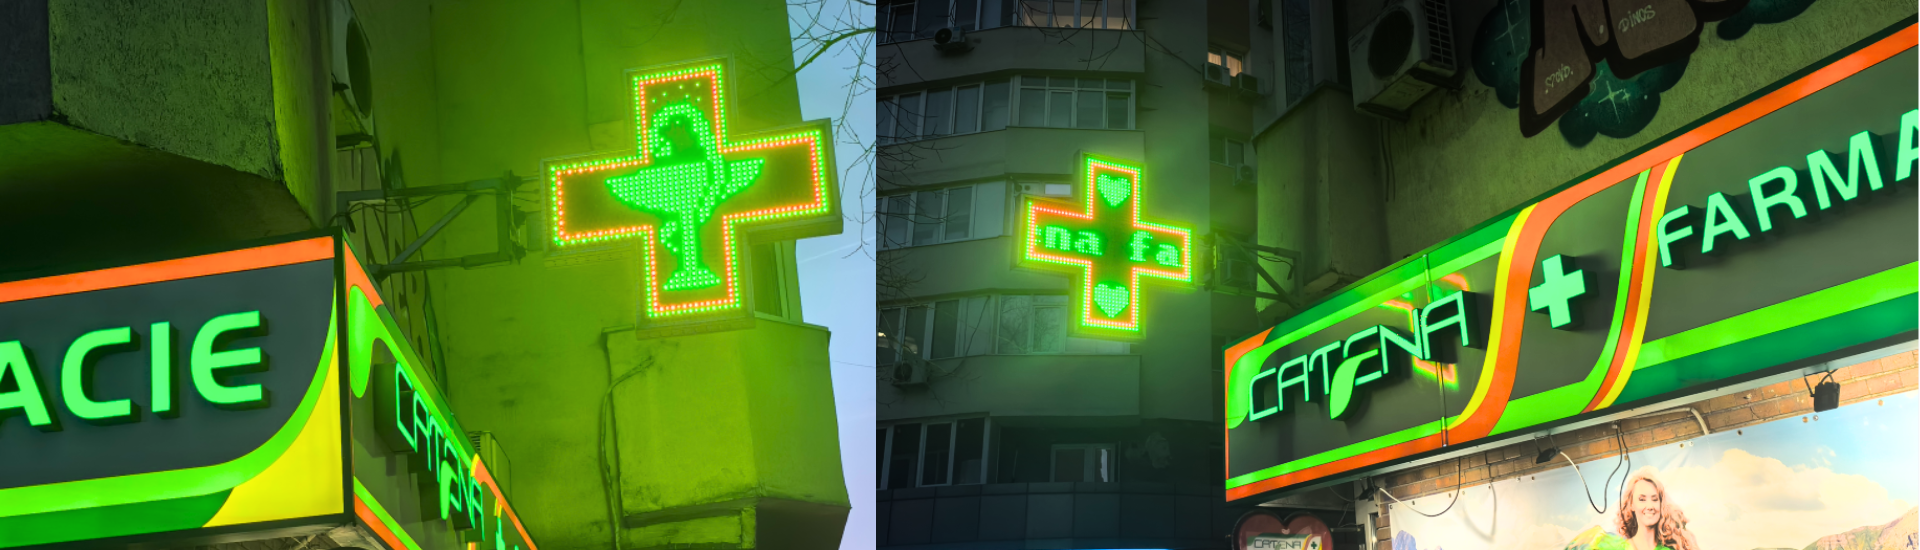 pharmacy cross logo